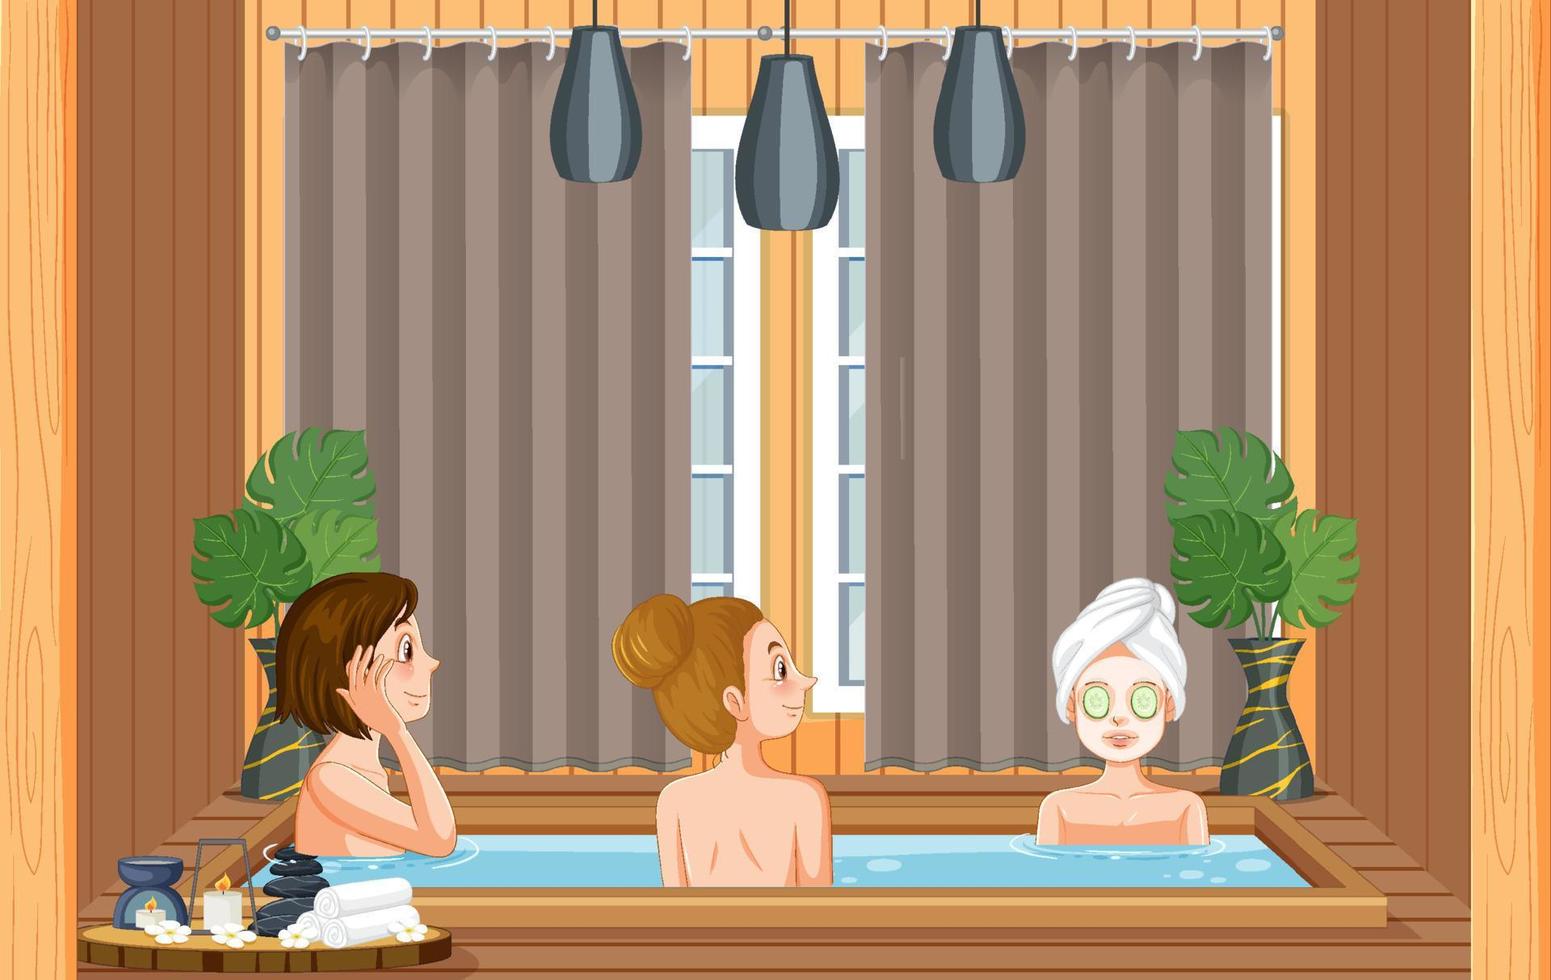 People at hot tub spa vector